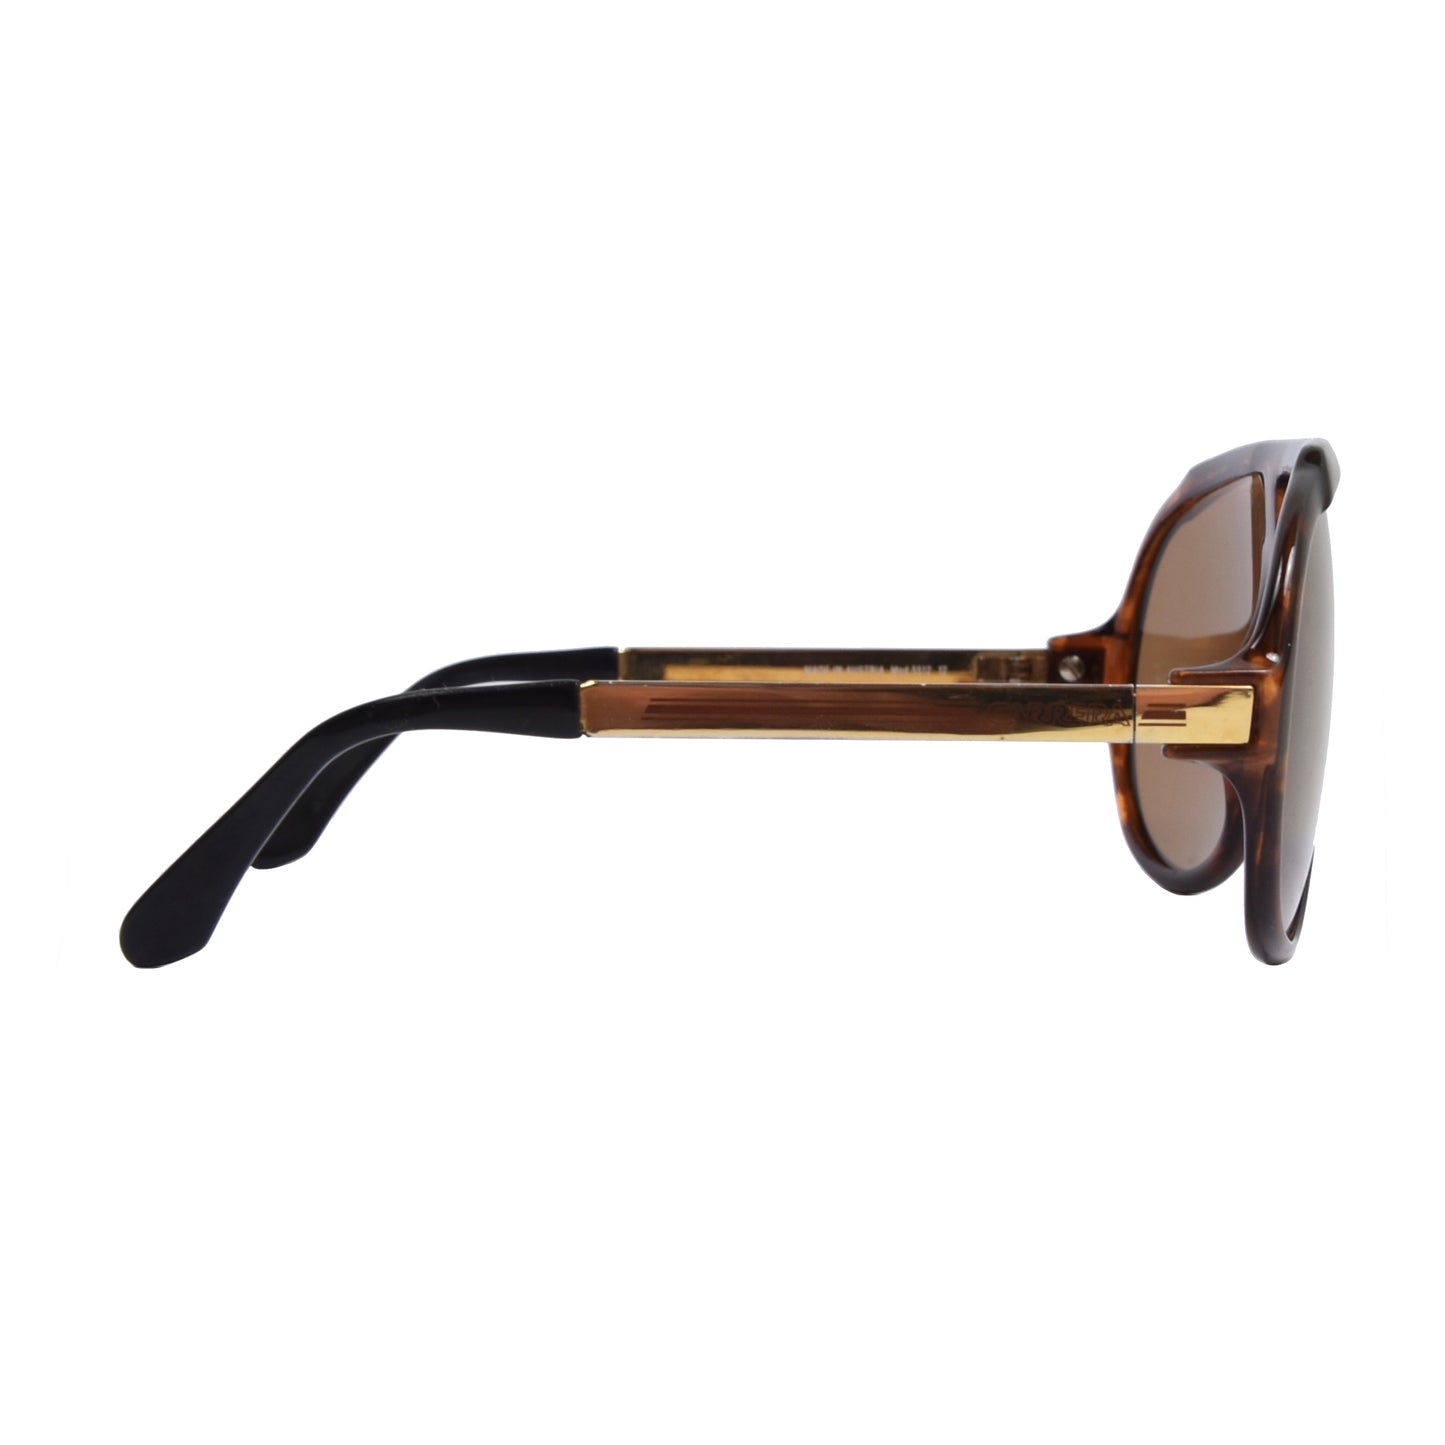 Carrera 5512 Miami Vice Sunglasses - Brown Tortoise